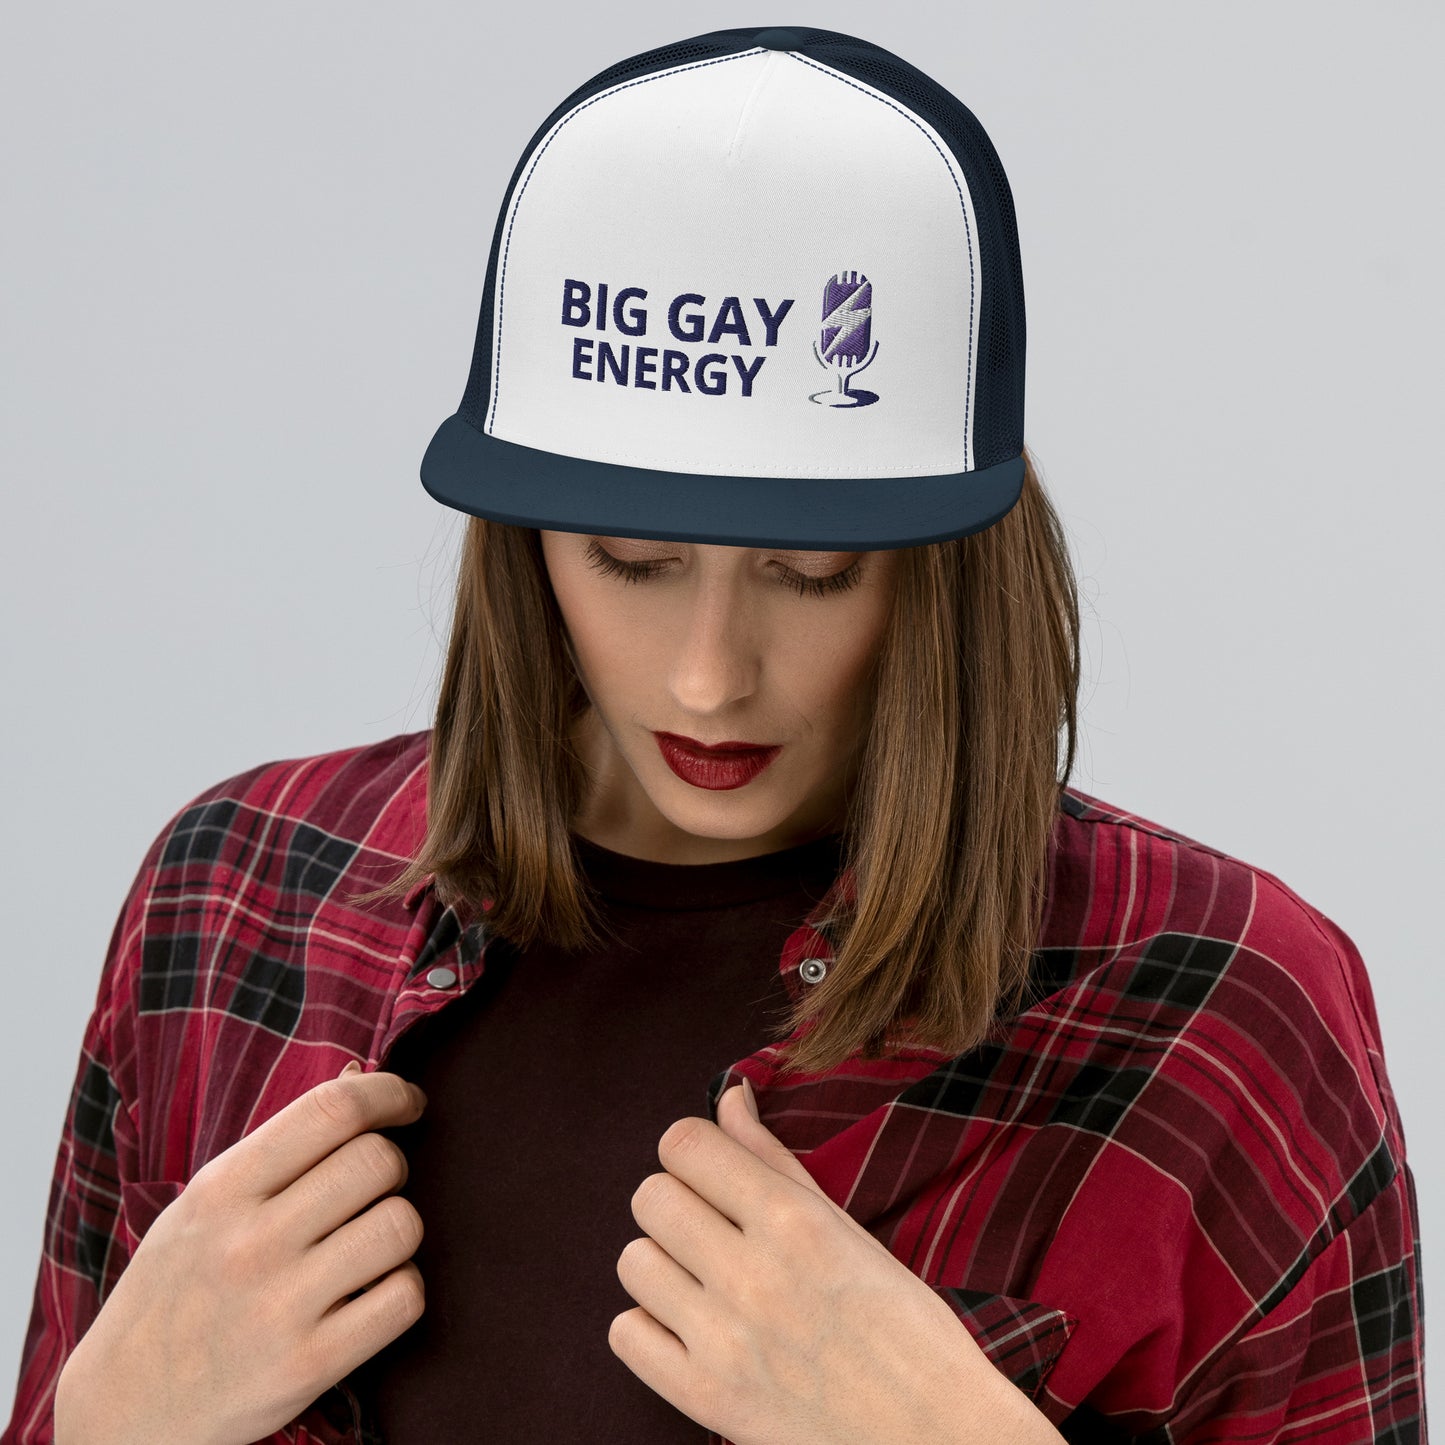 Big Gay Energy Trucker Cap